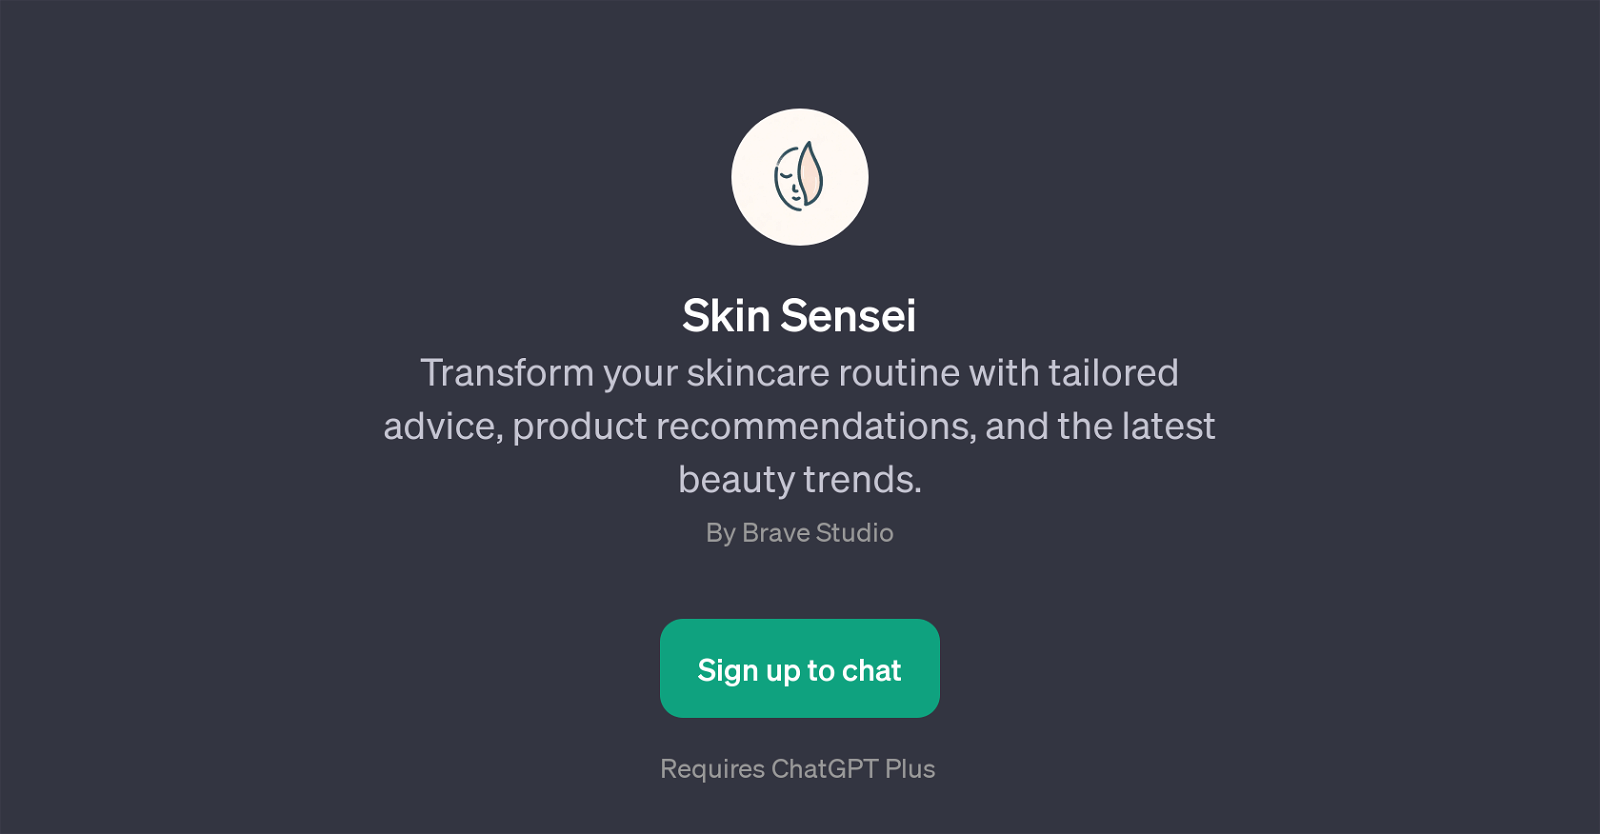 Skin Sensei website